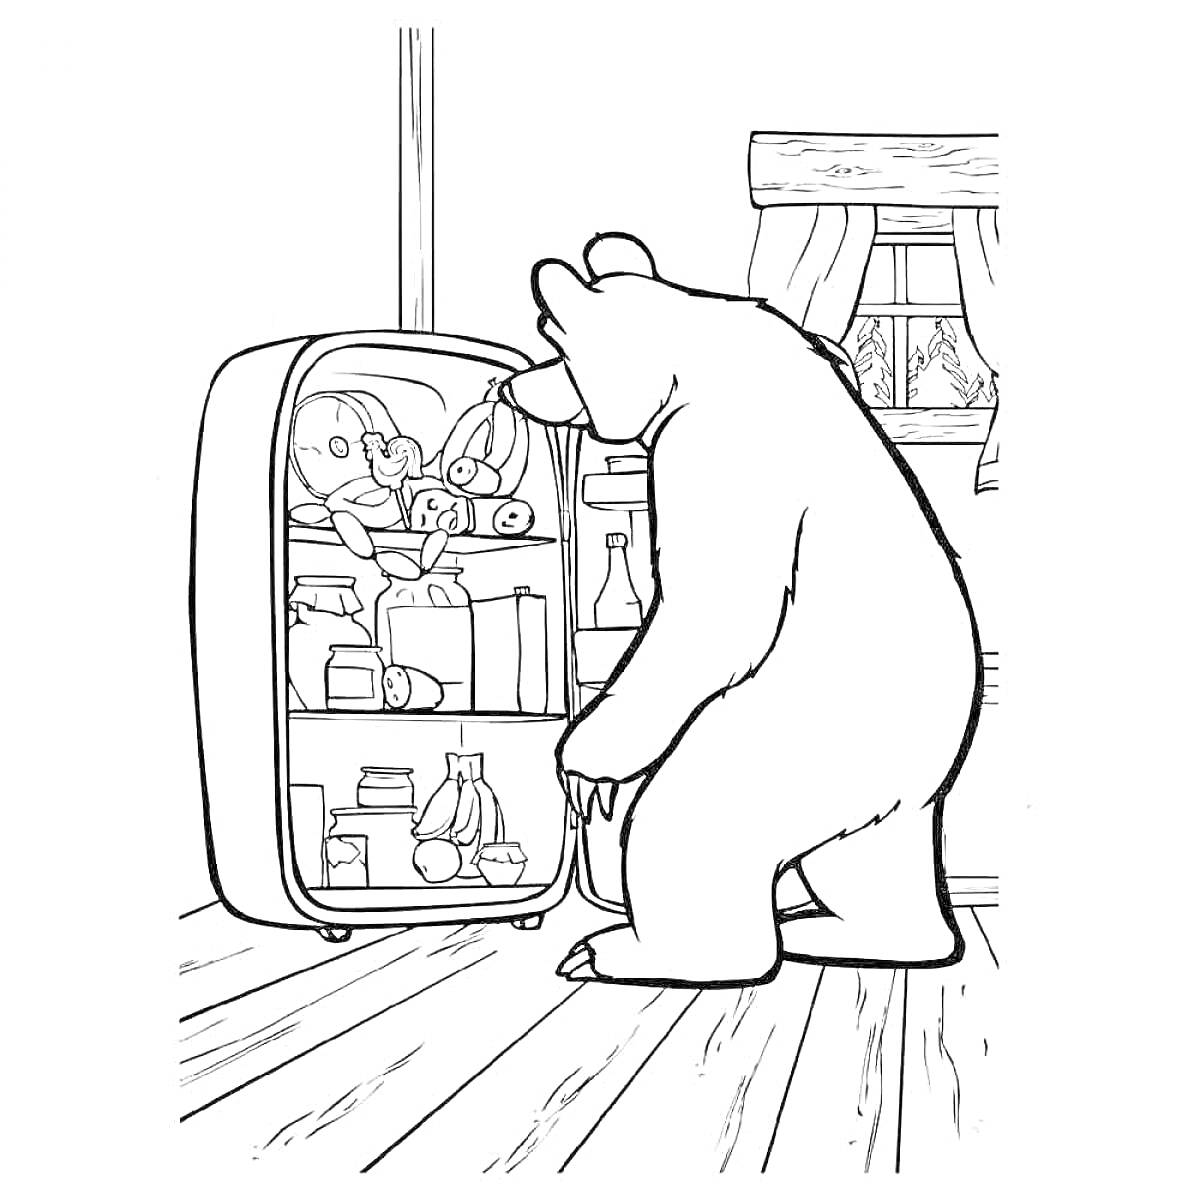 Раскраска Медведь, заглядывающий в холодильник с продуктами на кухне около окна